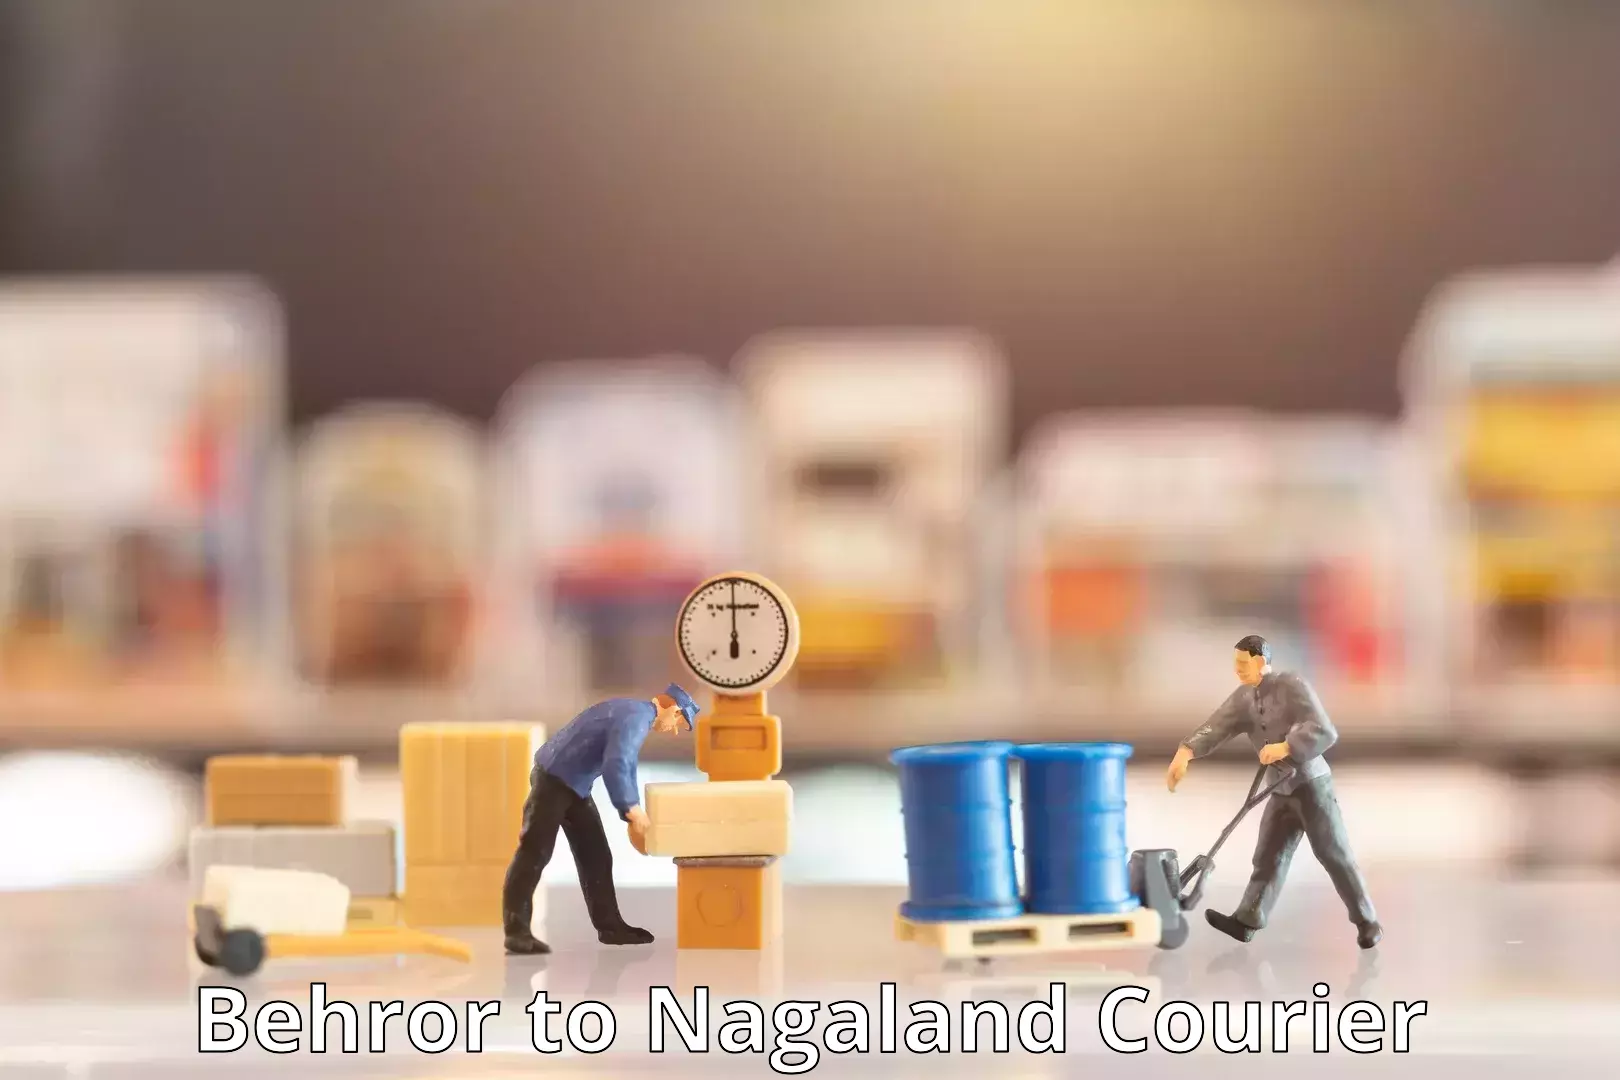 Logistics service provider Behror to Nagaland